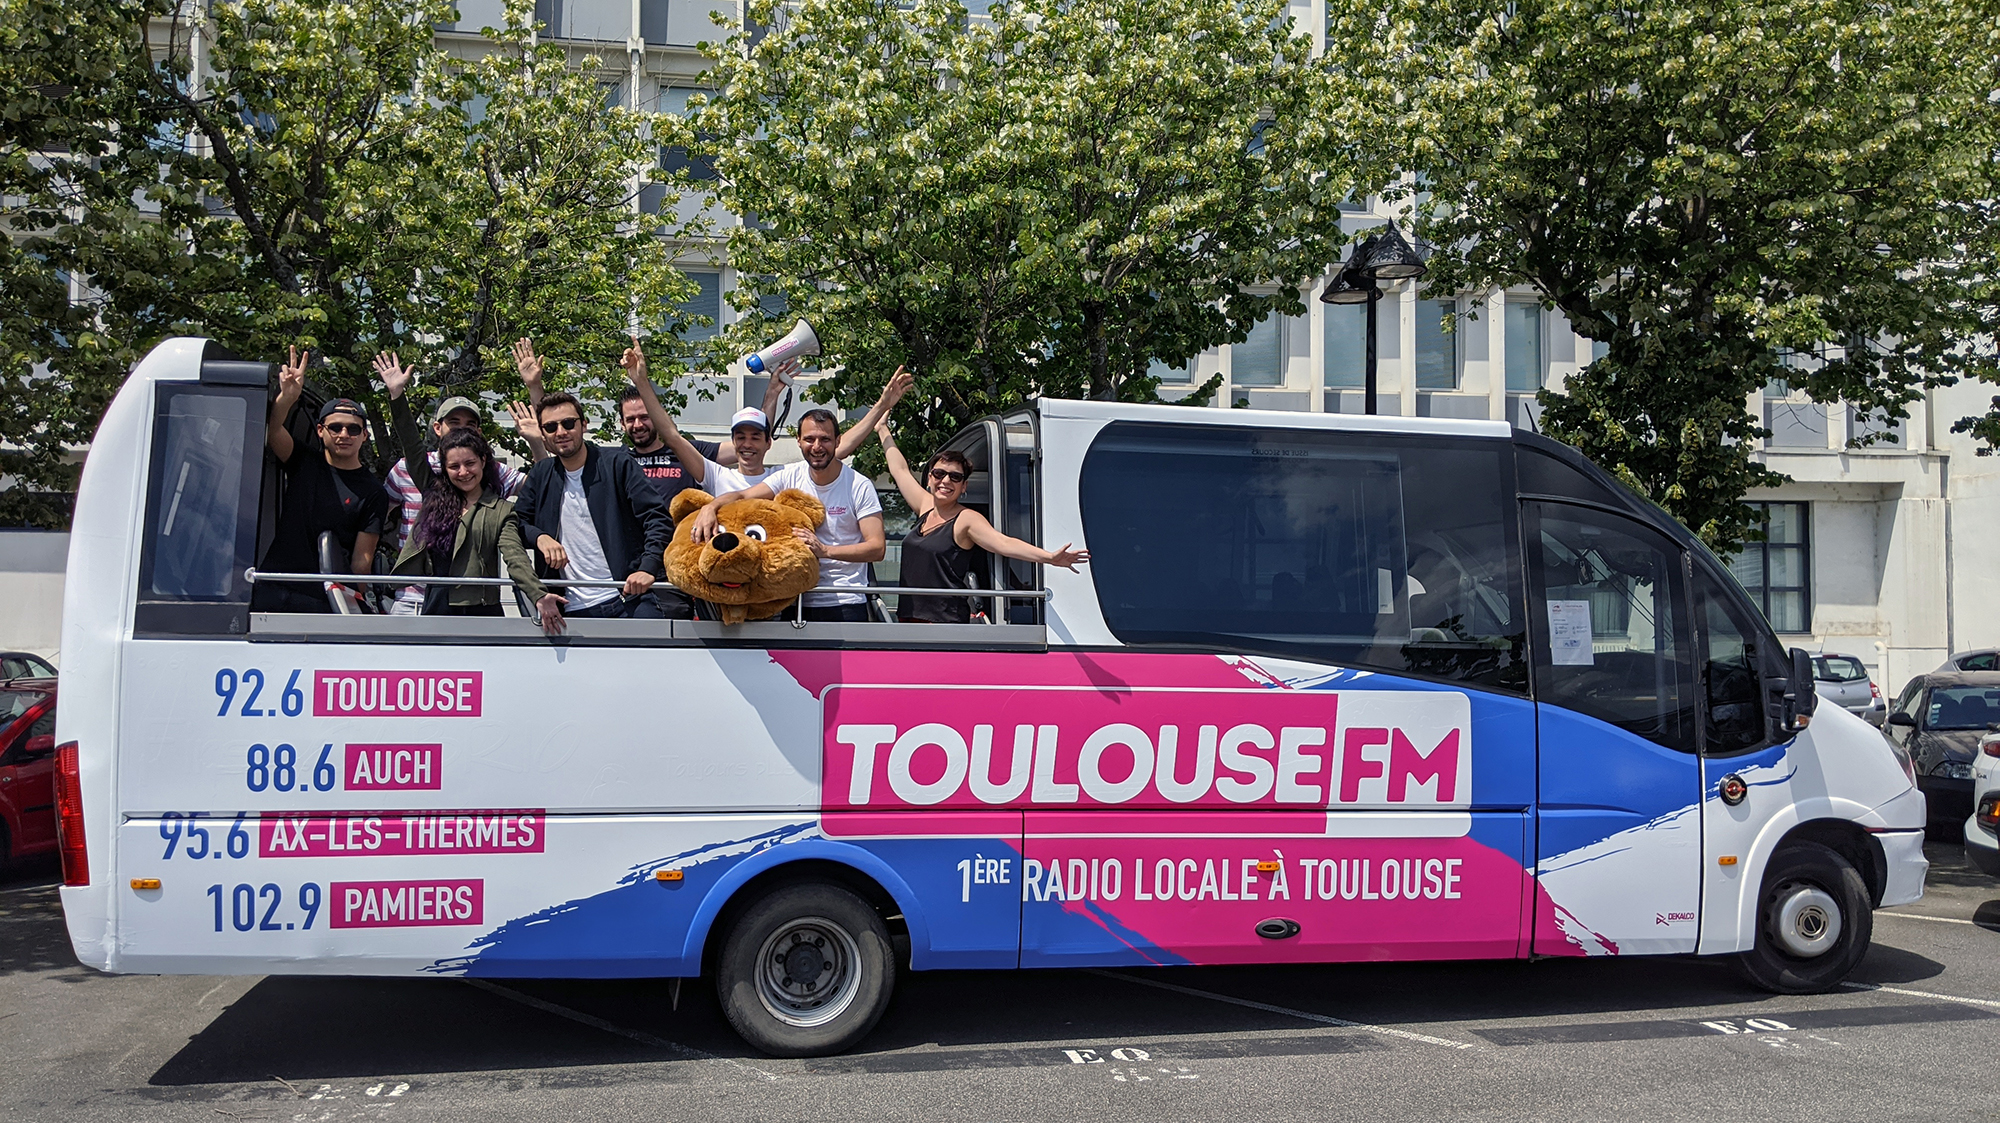 Toulouse FM Bus_1